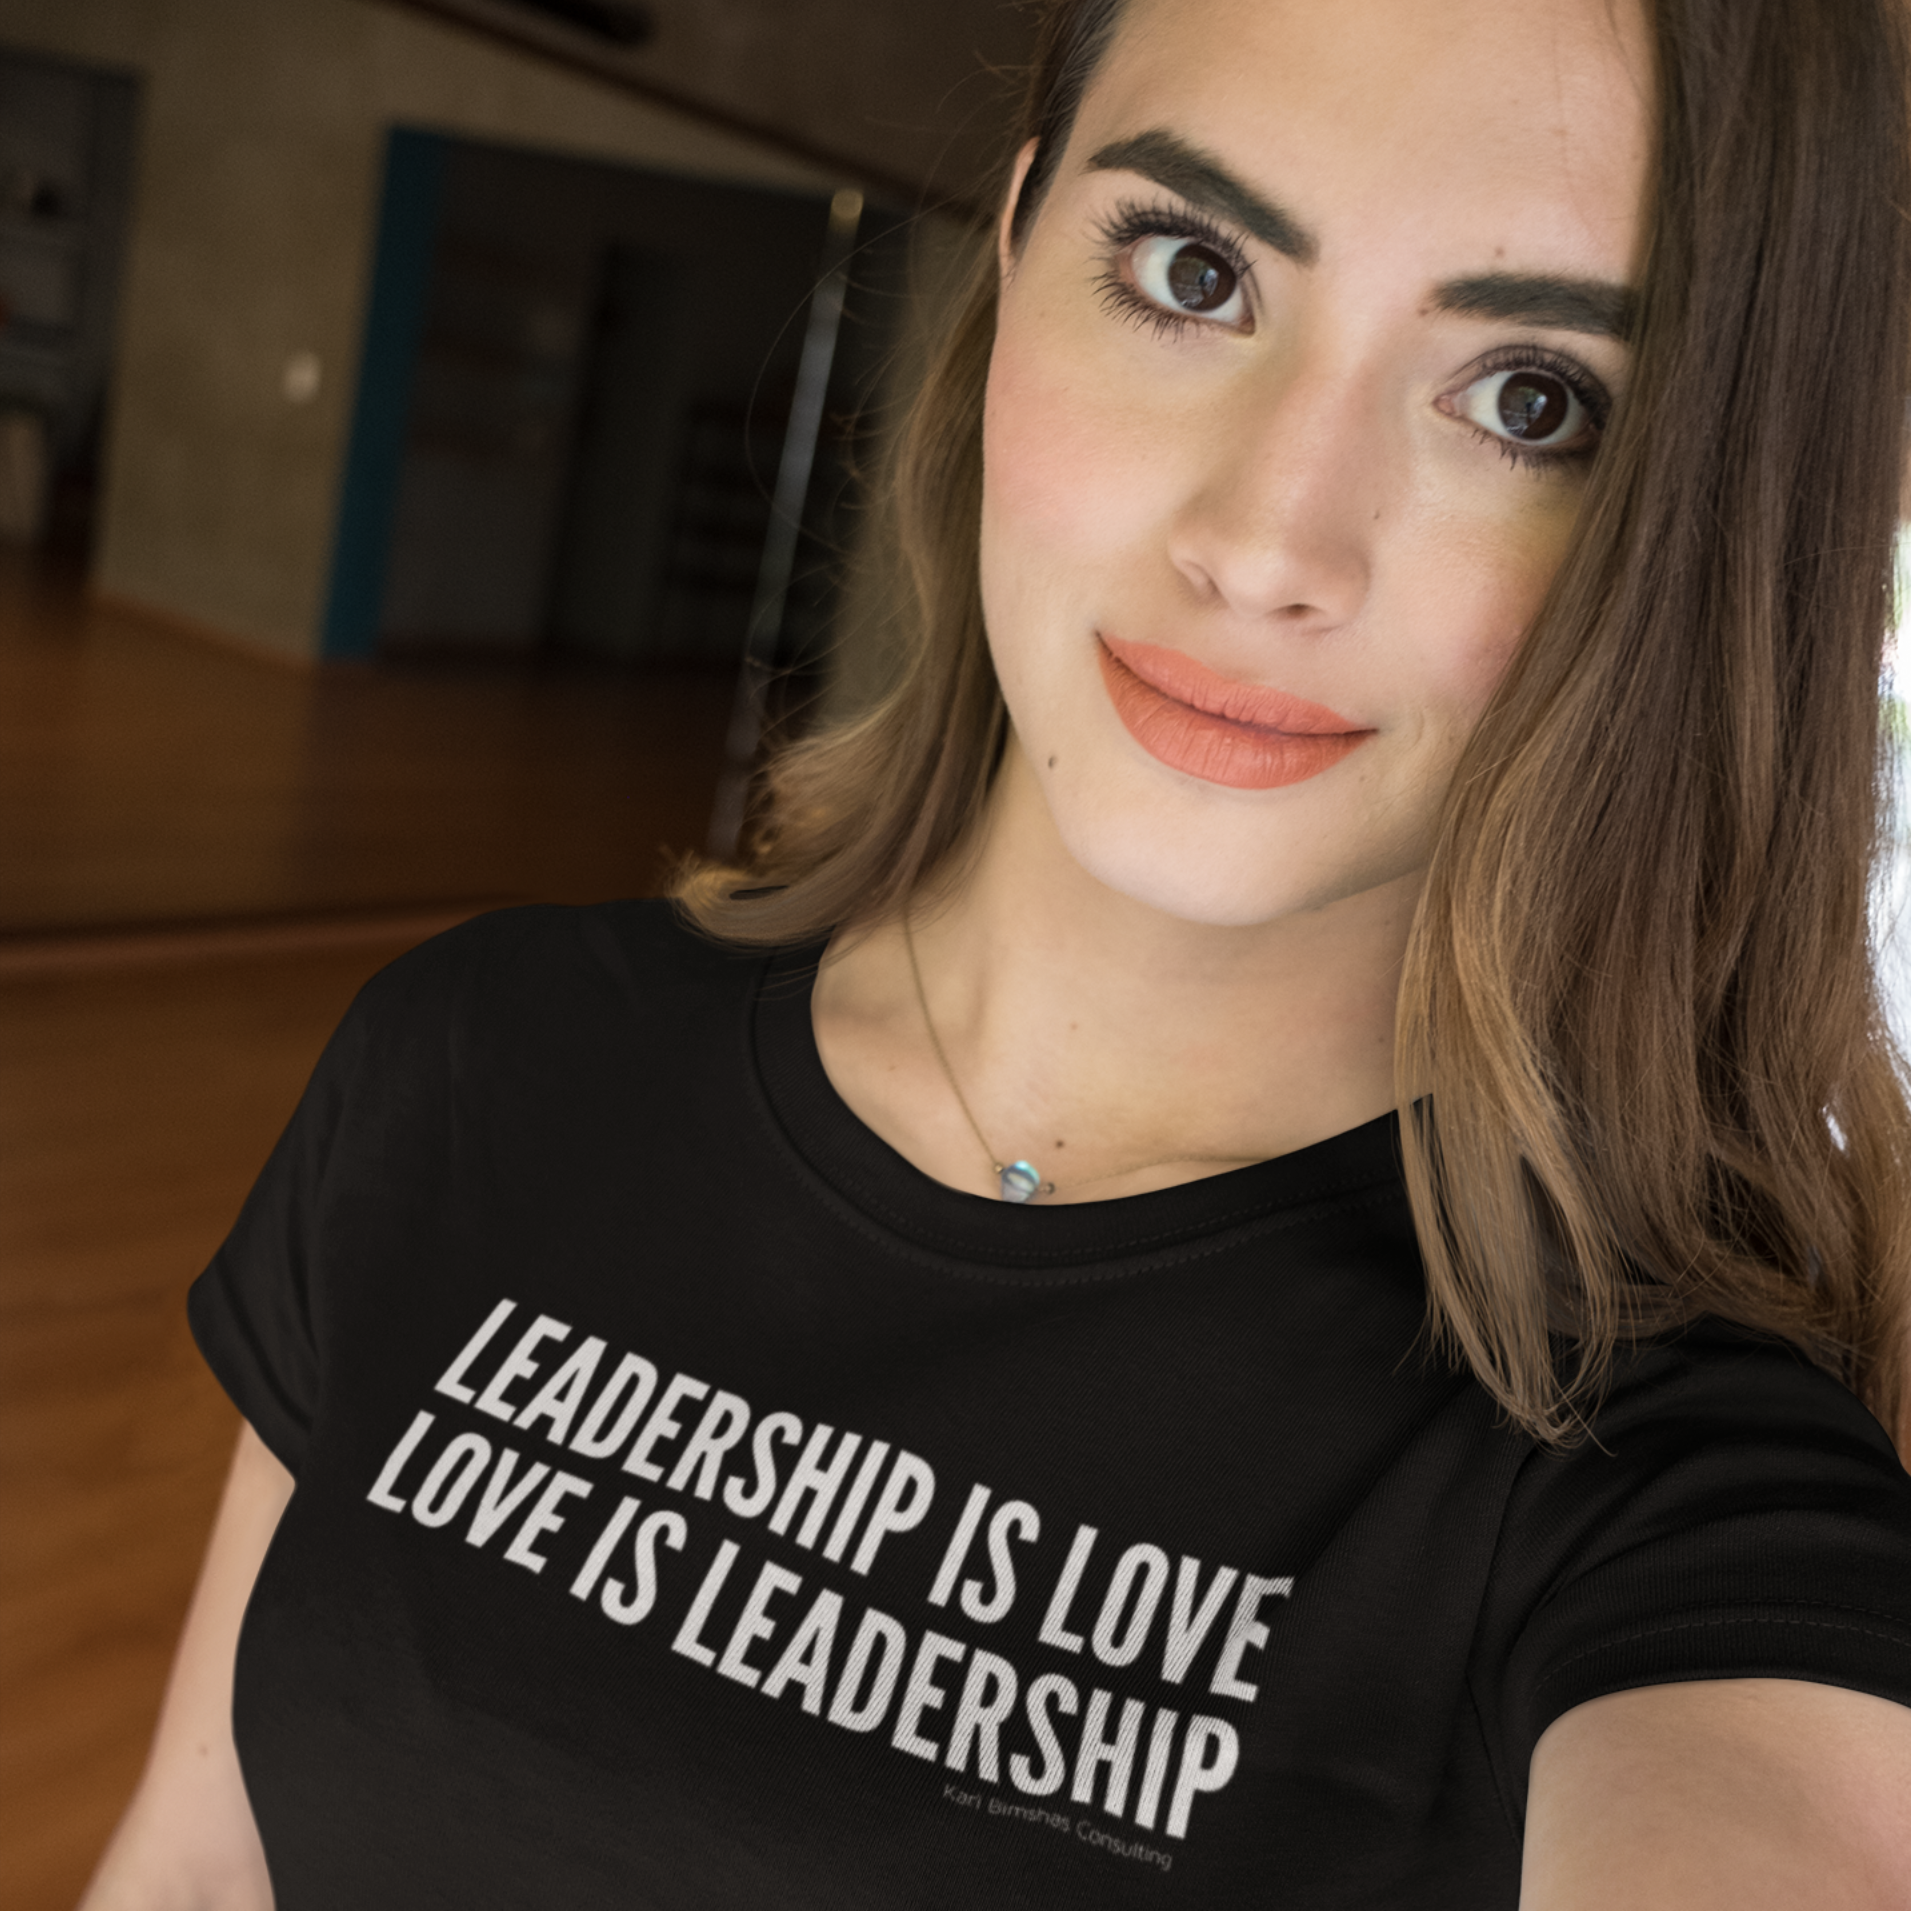 LeadershirtsPlus.com Leadership is Love